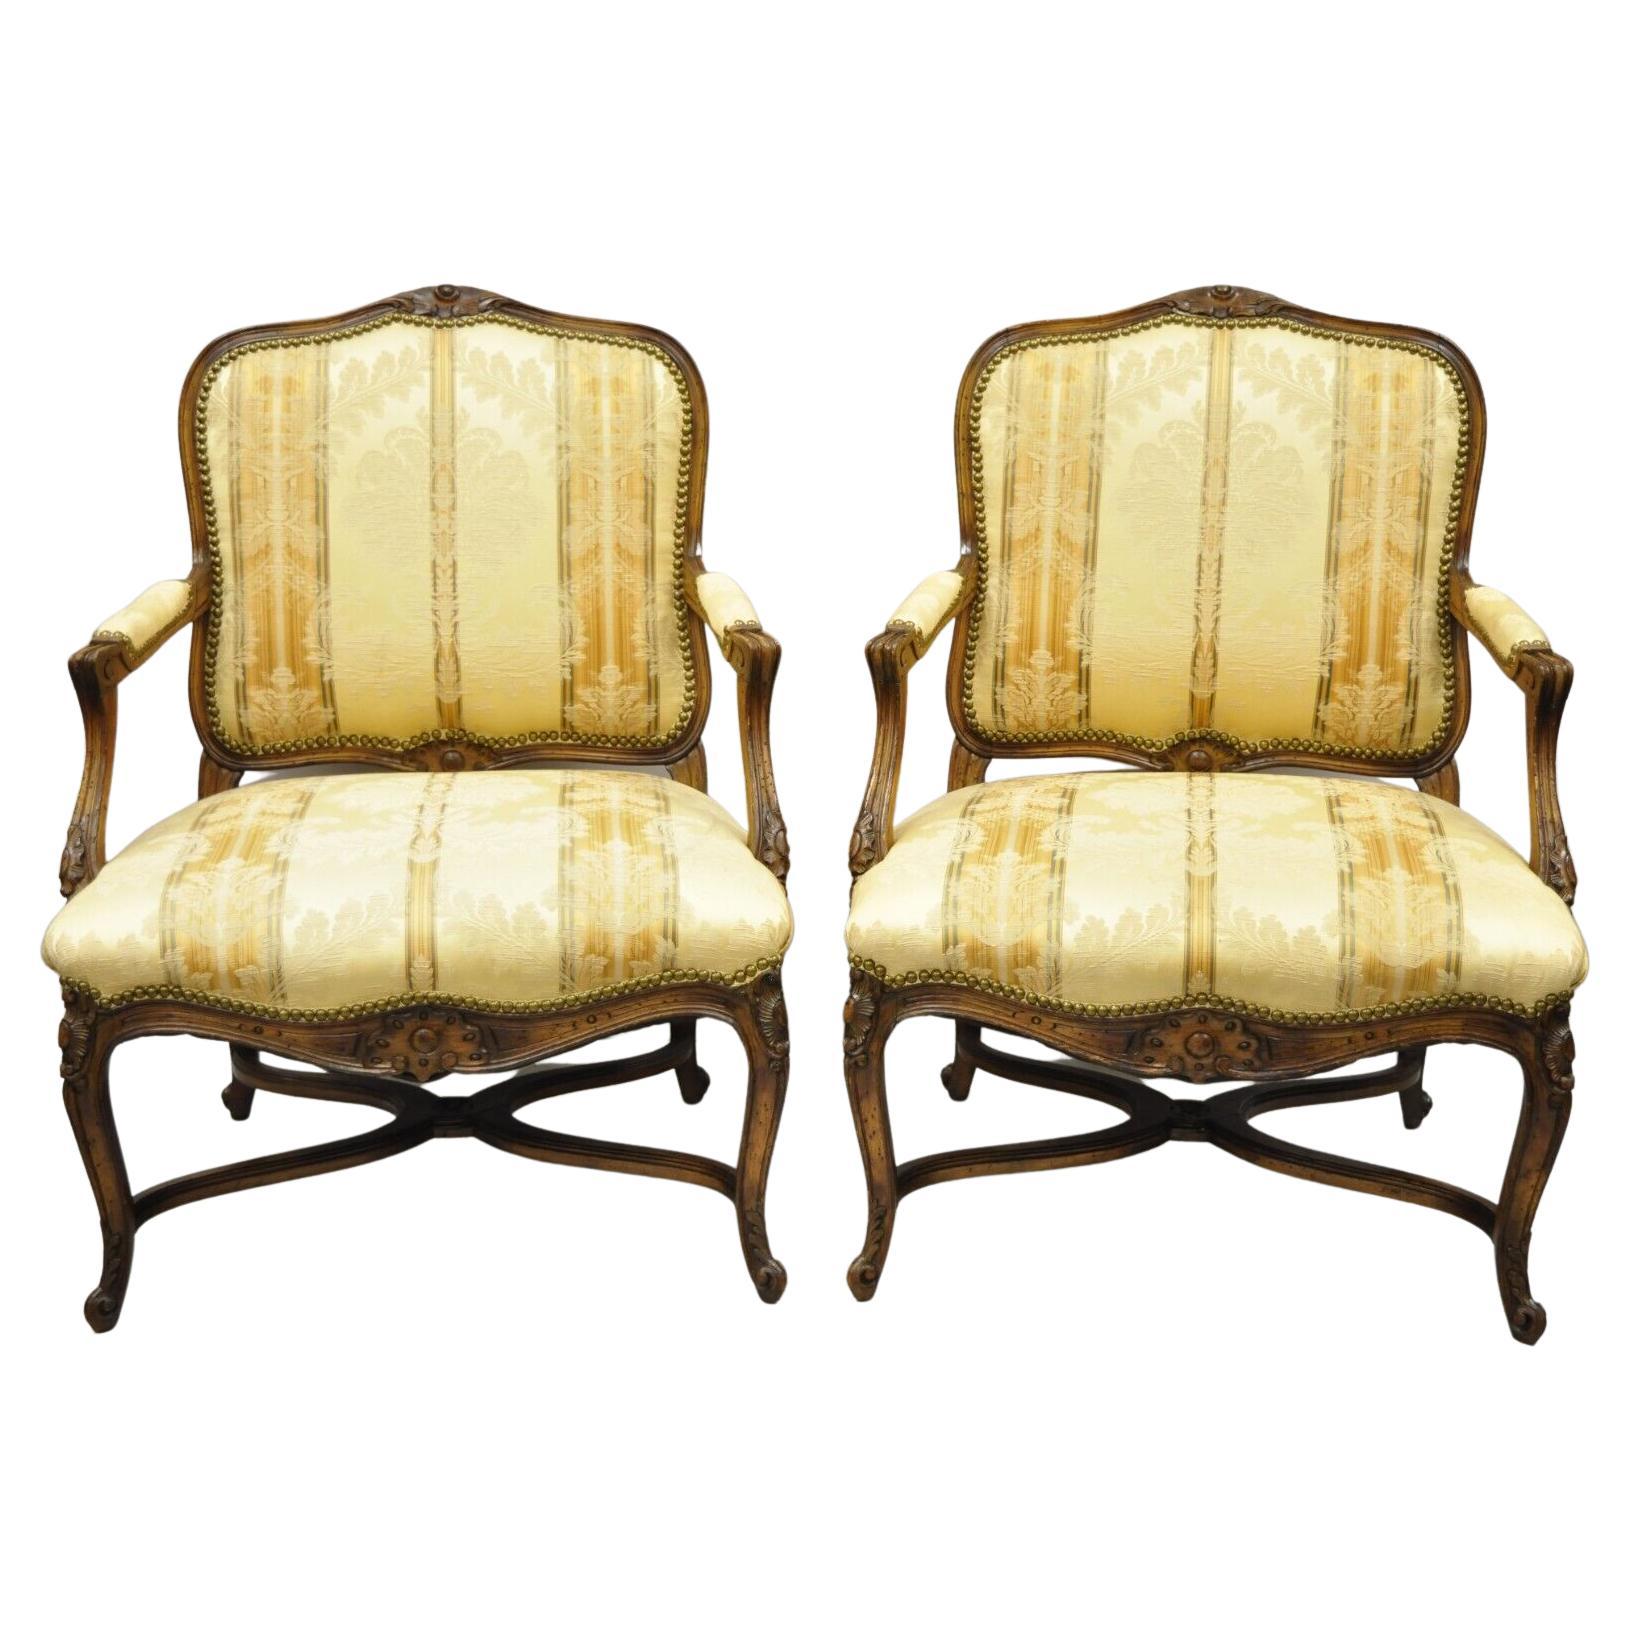 Vieille paire de chaises longues provinciales Louis XV de style country